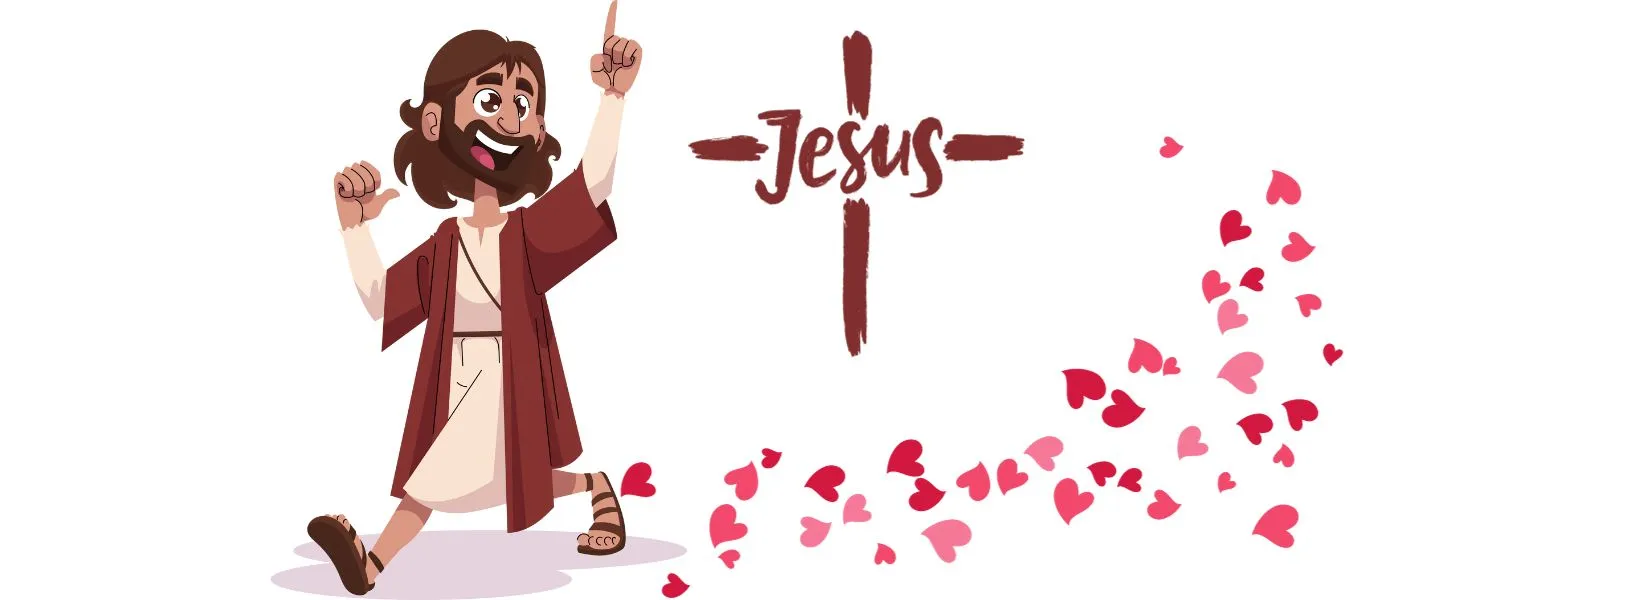 História infantil - Histórias da Bíblia - A Incrível História de Jesus O Maior Amor do Mundo